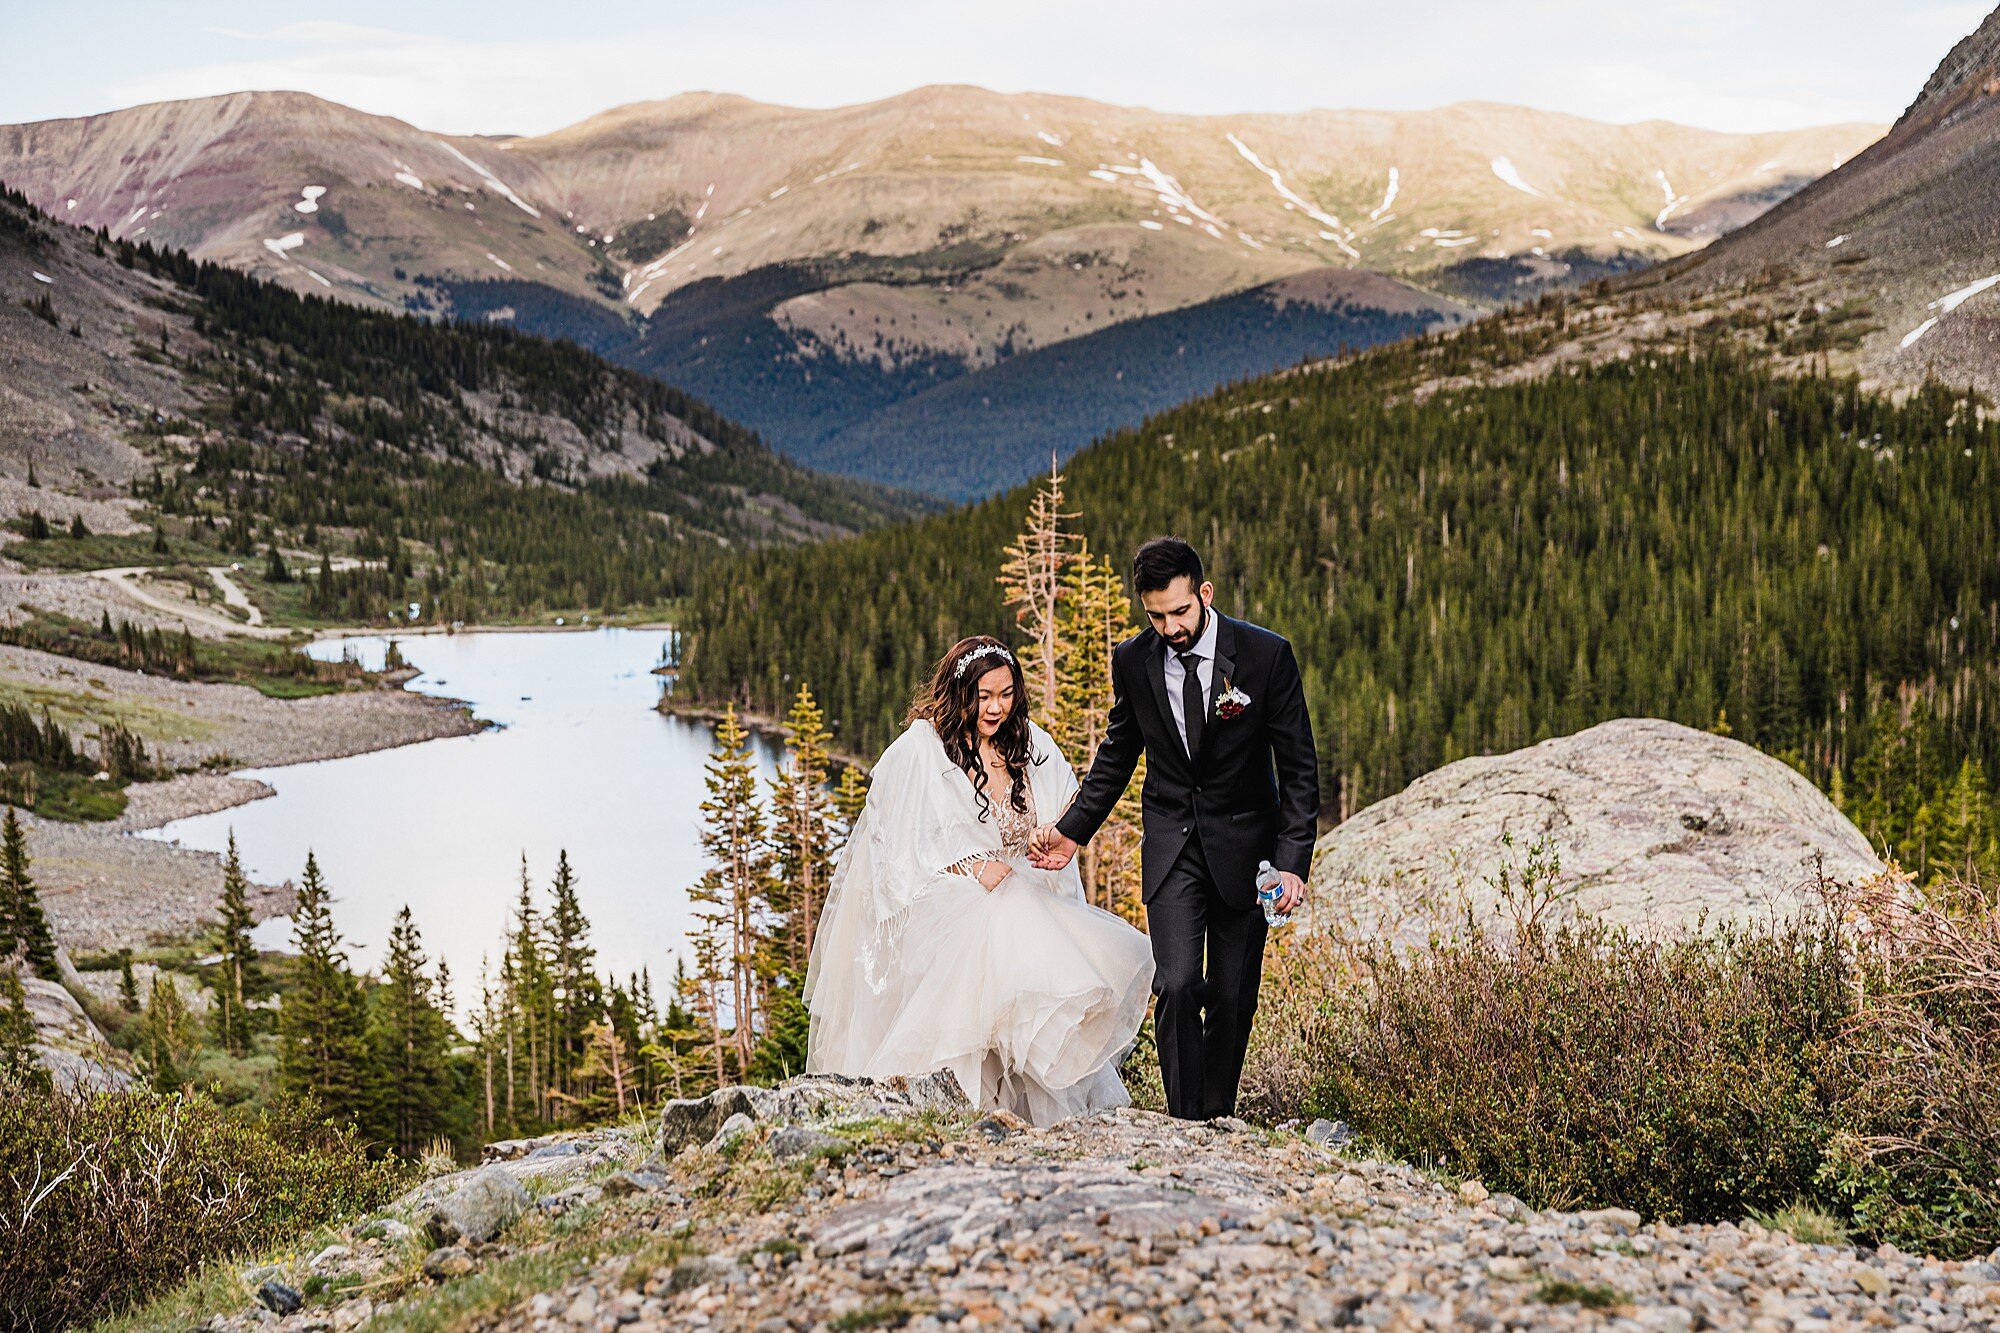 Colorado Mountaintop Wedding | Colorado Elopement Photographer and Videographer | Vow of the Wild